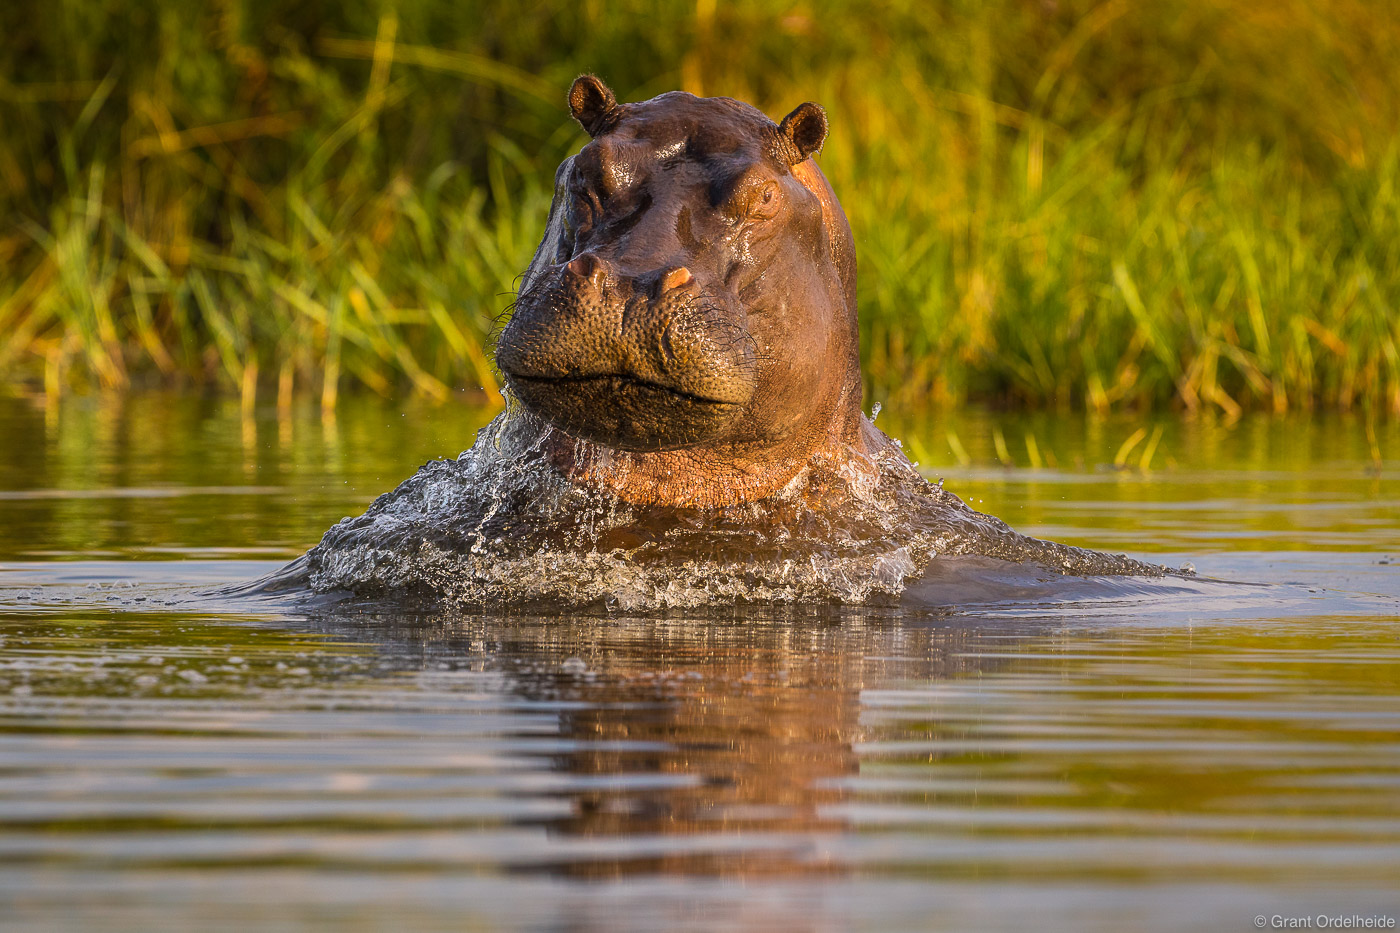 A hippopotamus&nbsp;breaching&nbsp;the water surface during a safari in the Okavango Delta.